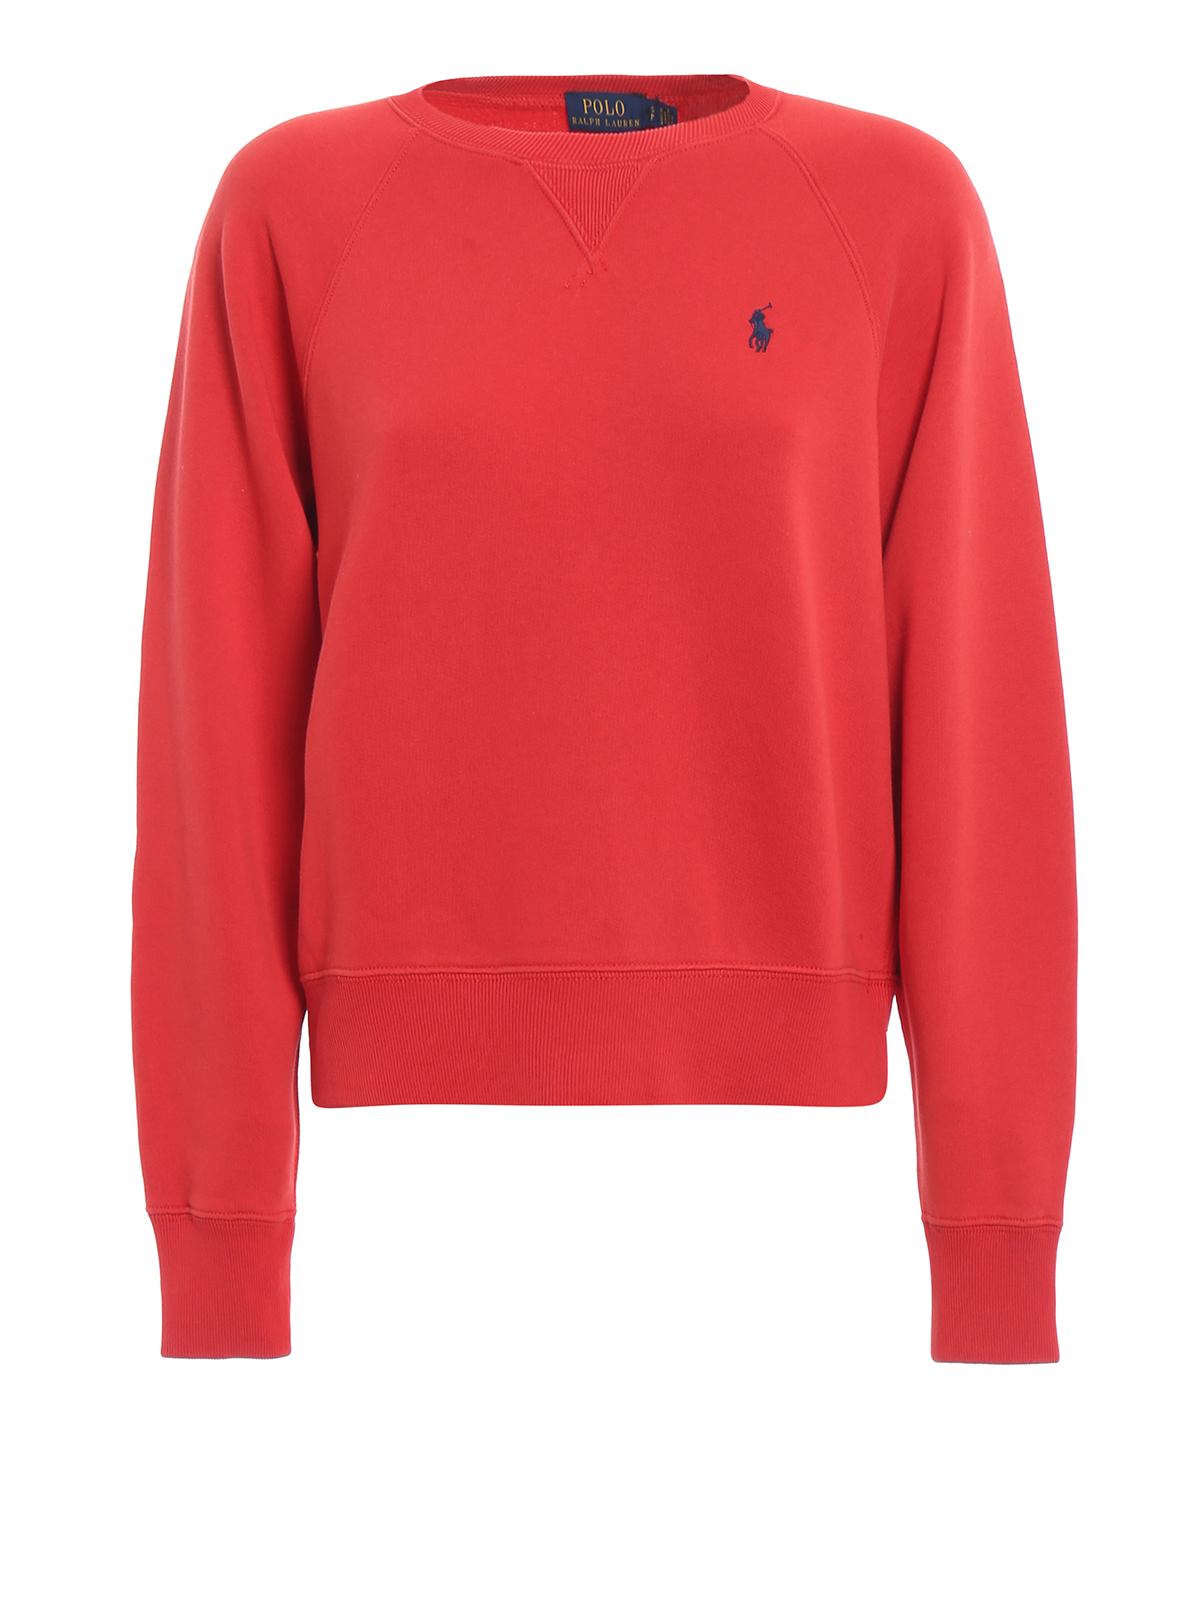 Sweatshirts & Sweaters Polo Ralph Lauren - Crew neck red sweatshirt -  211704751006